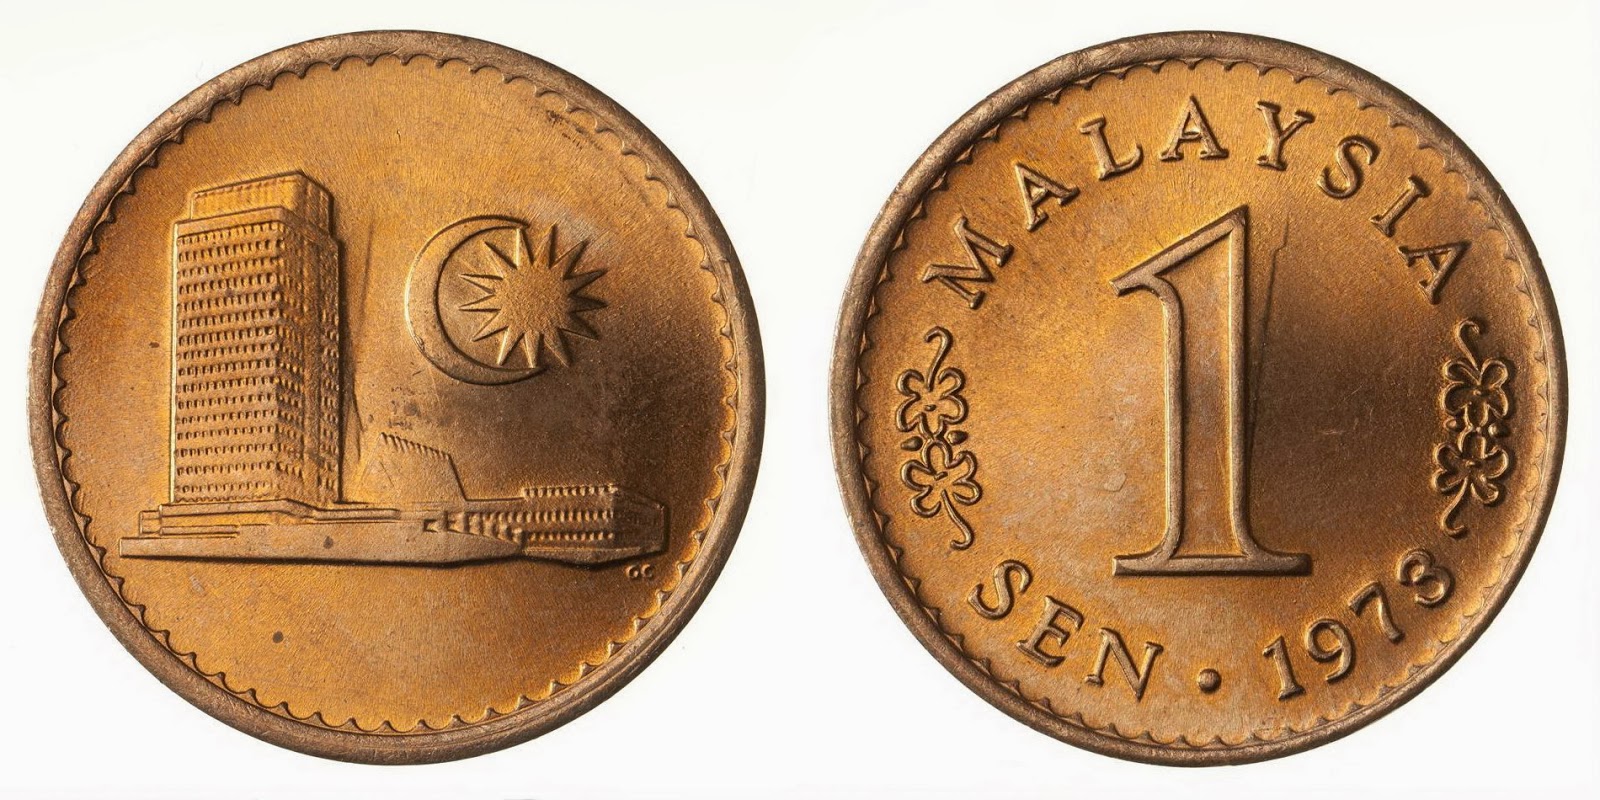 Малайзия счет. Монеты Малайзии. Penny. Malaysia value.